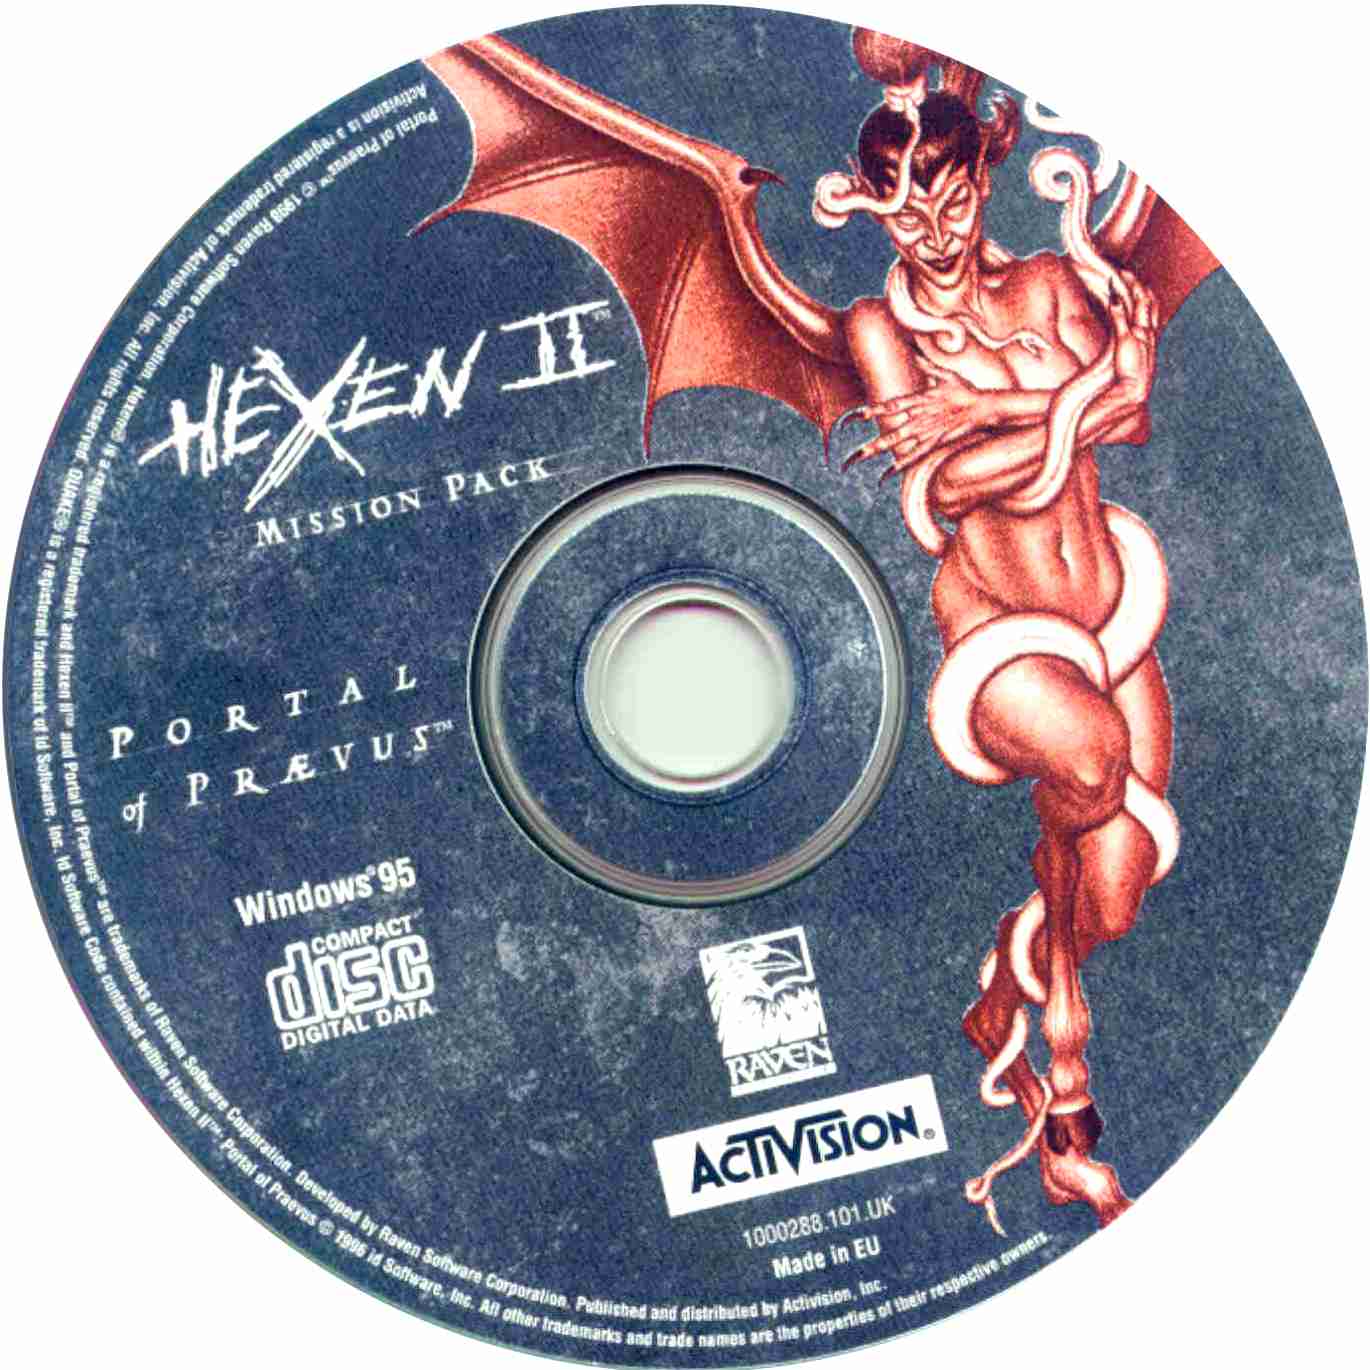 Hexen 2: Portal of Praevus - Mission Pack - CD obal